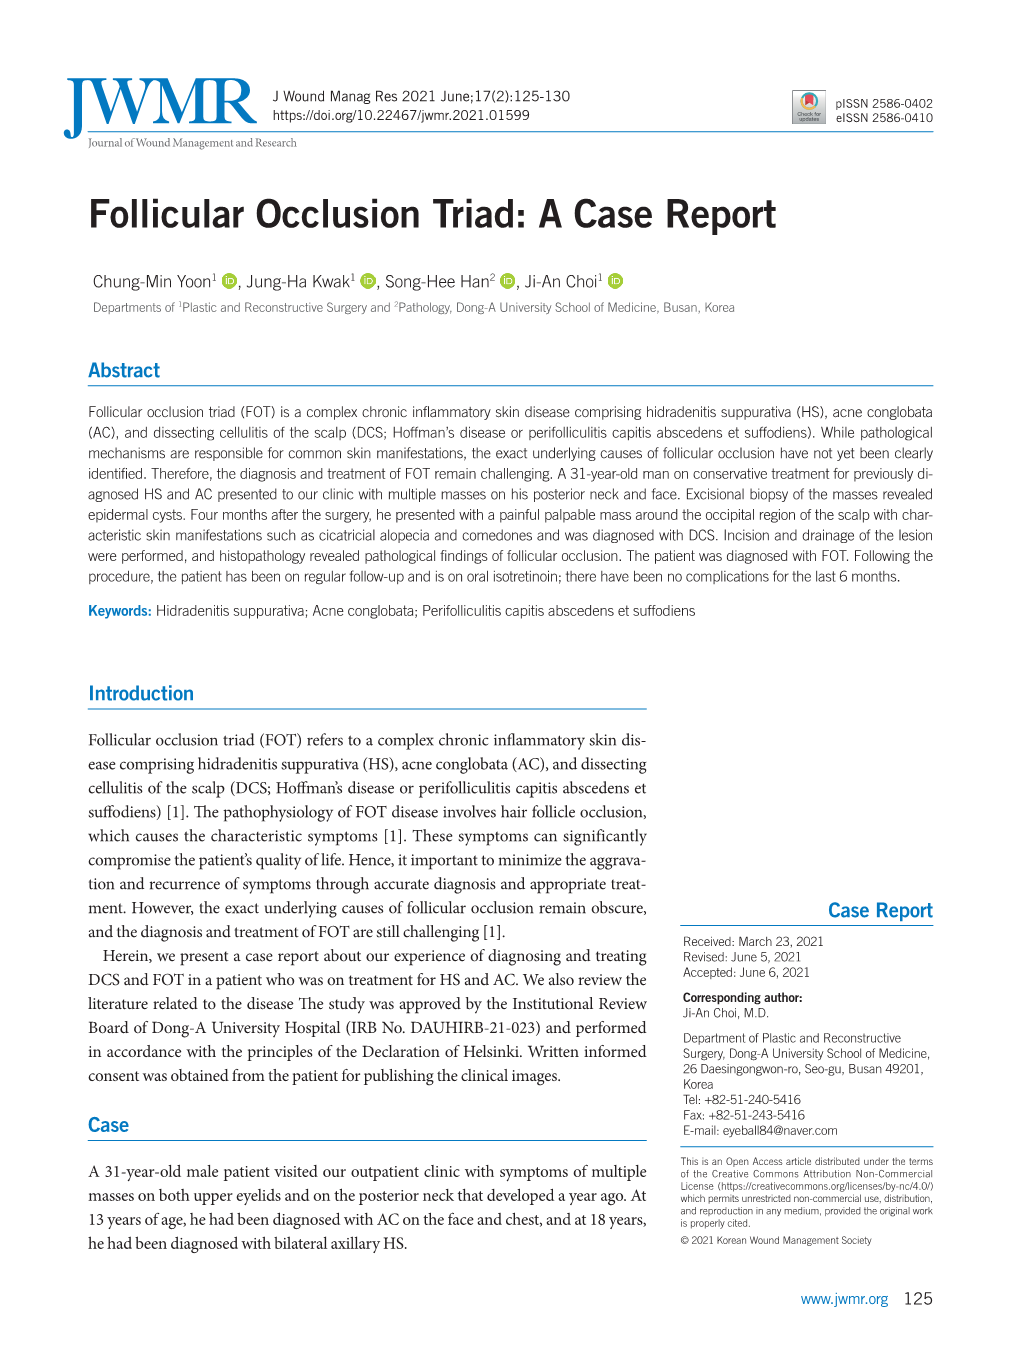 Follicular Occlusion Triad: a Case Report